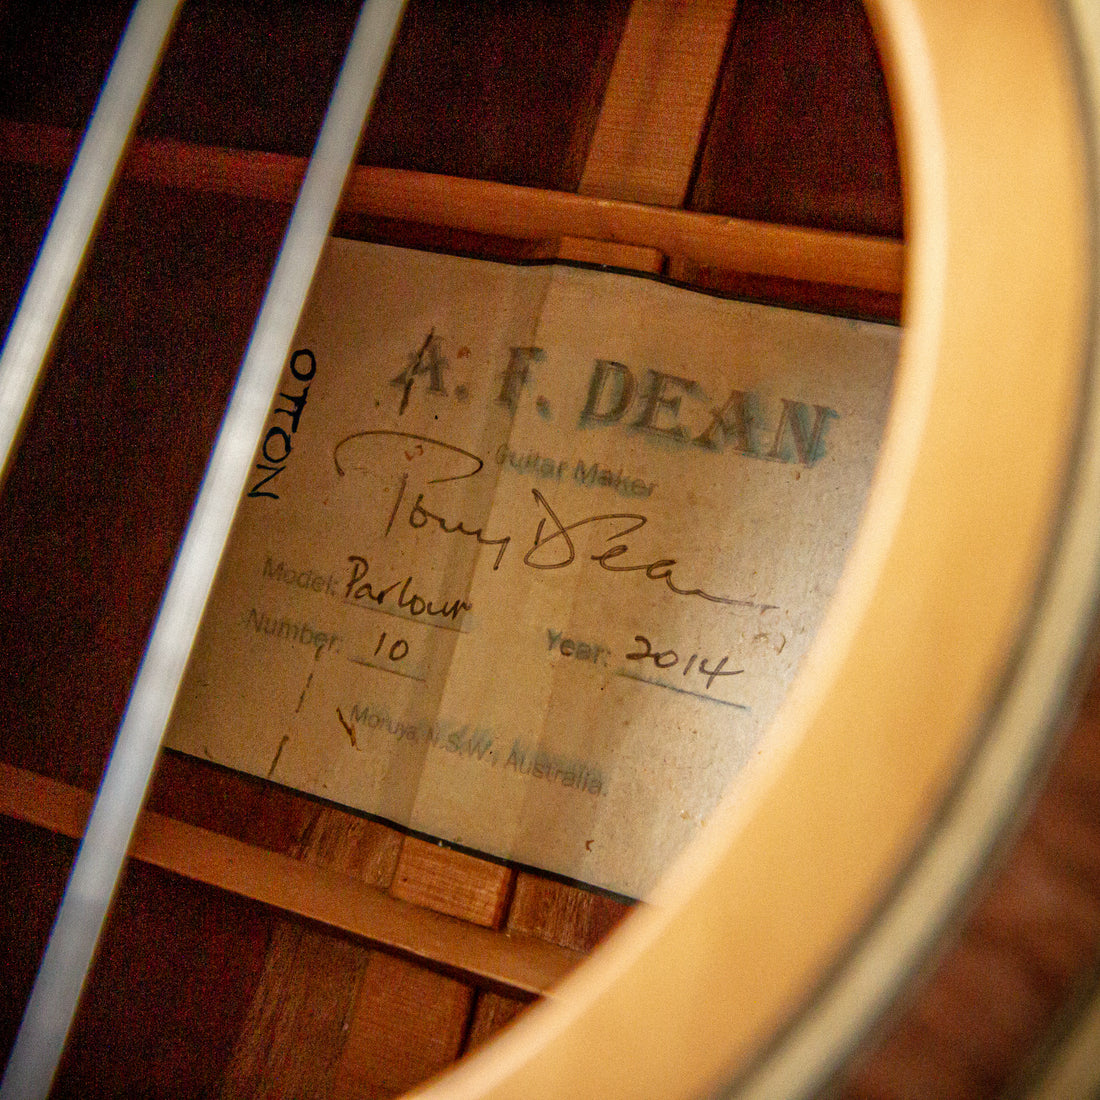 AF Dean Parlour Acoustic 2014